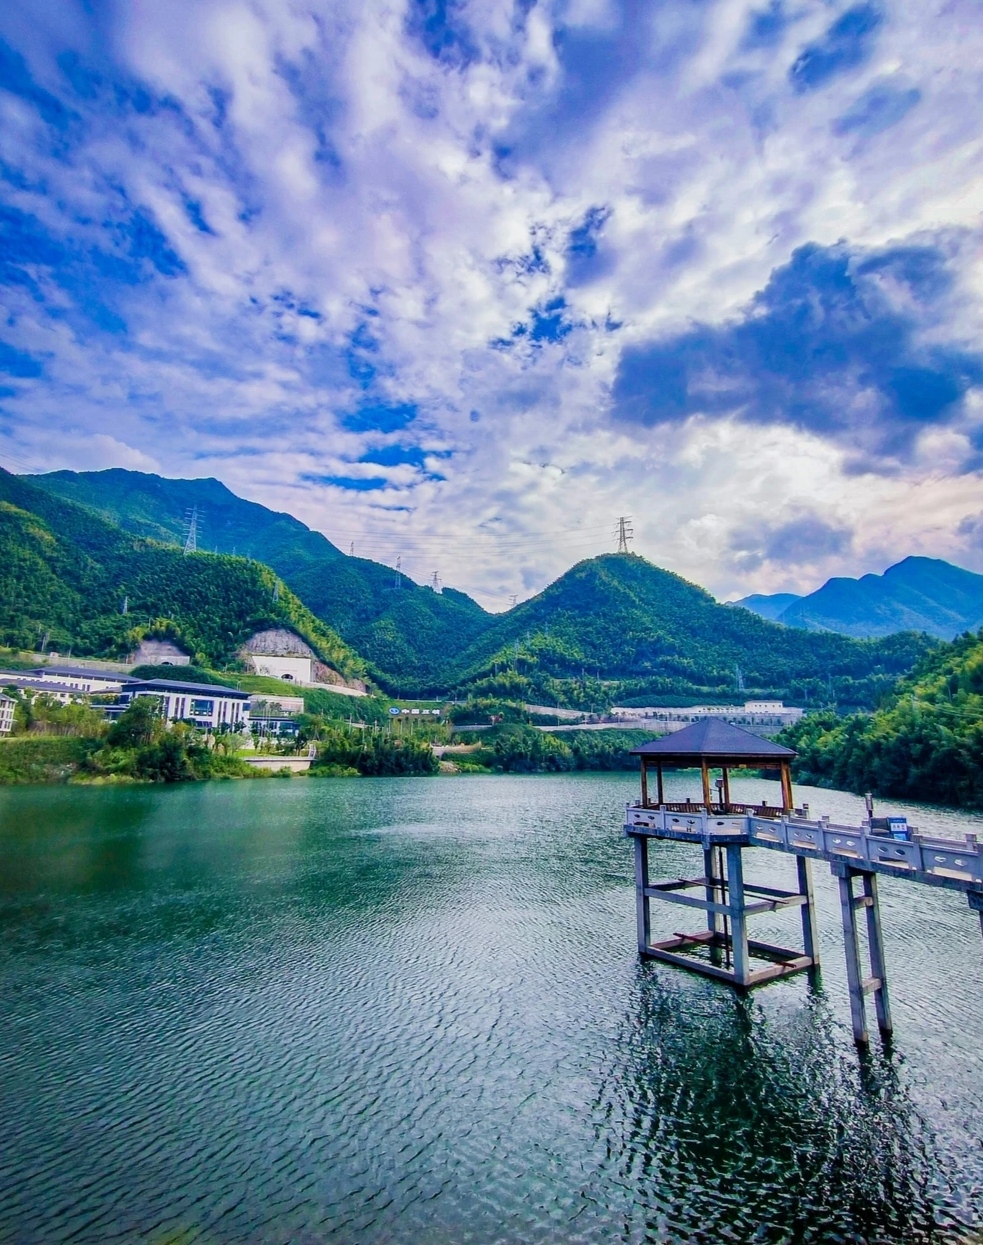 湖州安吉潘村水库:宁静之美的独特风景